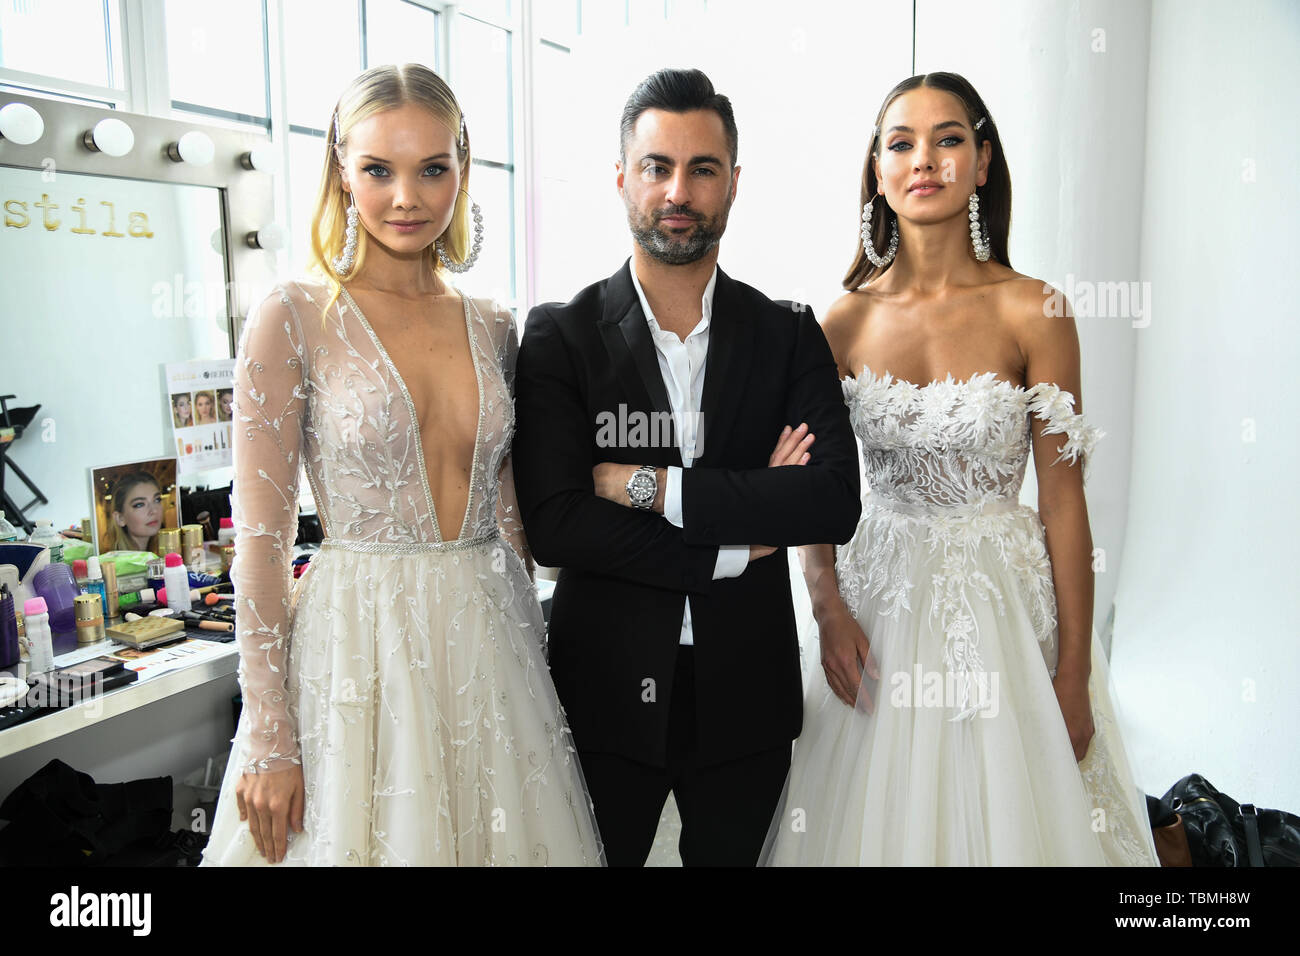 New York Bridal Fashion Week Spring Summer 2020 - Berta Bridal - Backstge  Featuring: Ada Martini, Nir Moscovich